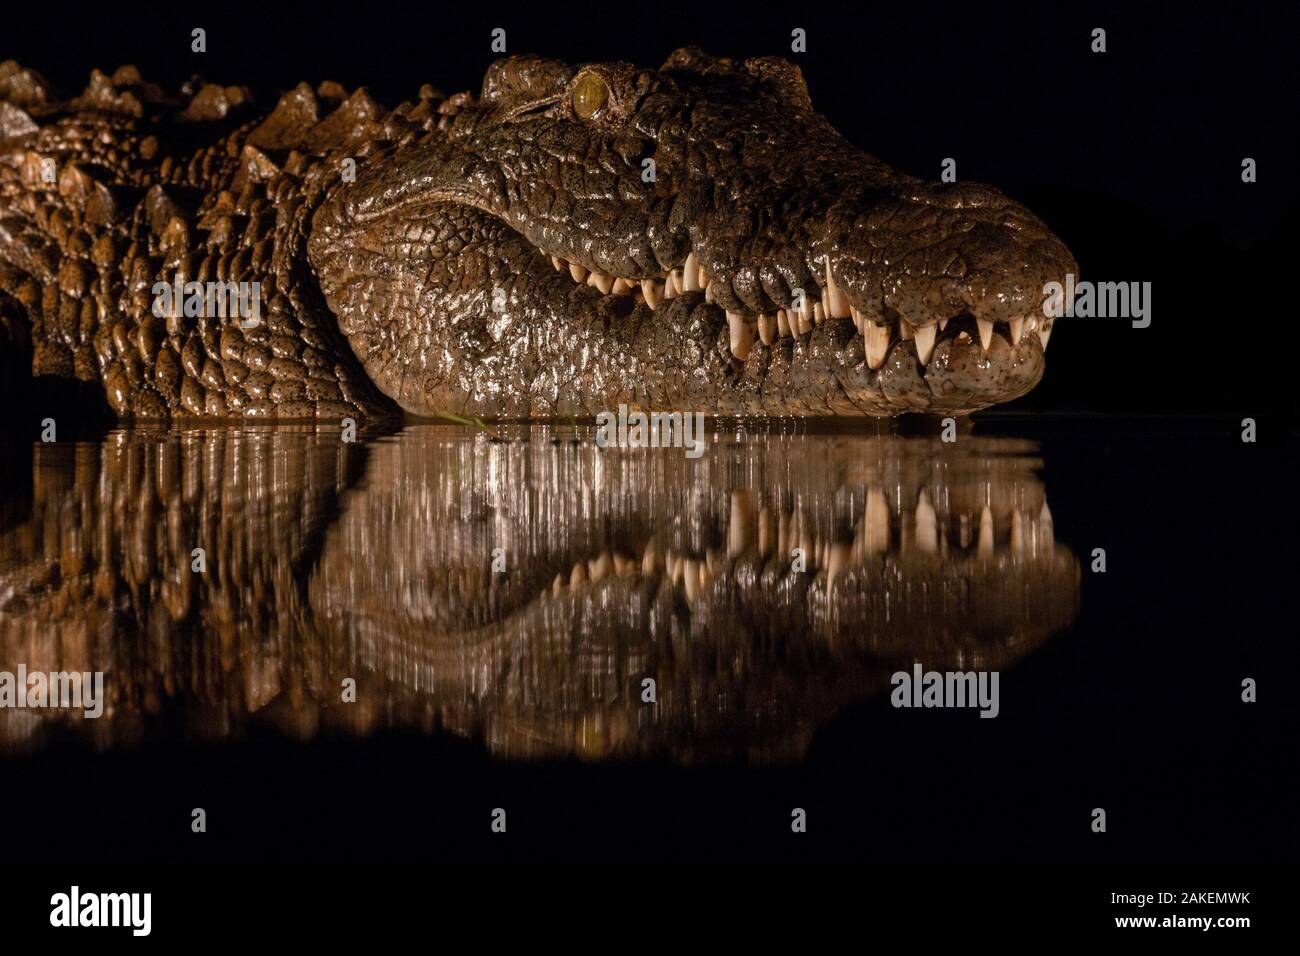 Le crocodile du Nil (Crocodylus niloticus) la nuit, Zimanga Private Game Reserve, KwaZulu-Natal, Afrique du Sud. Banque D'Images